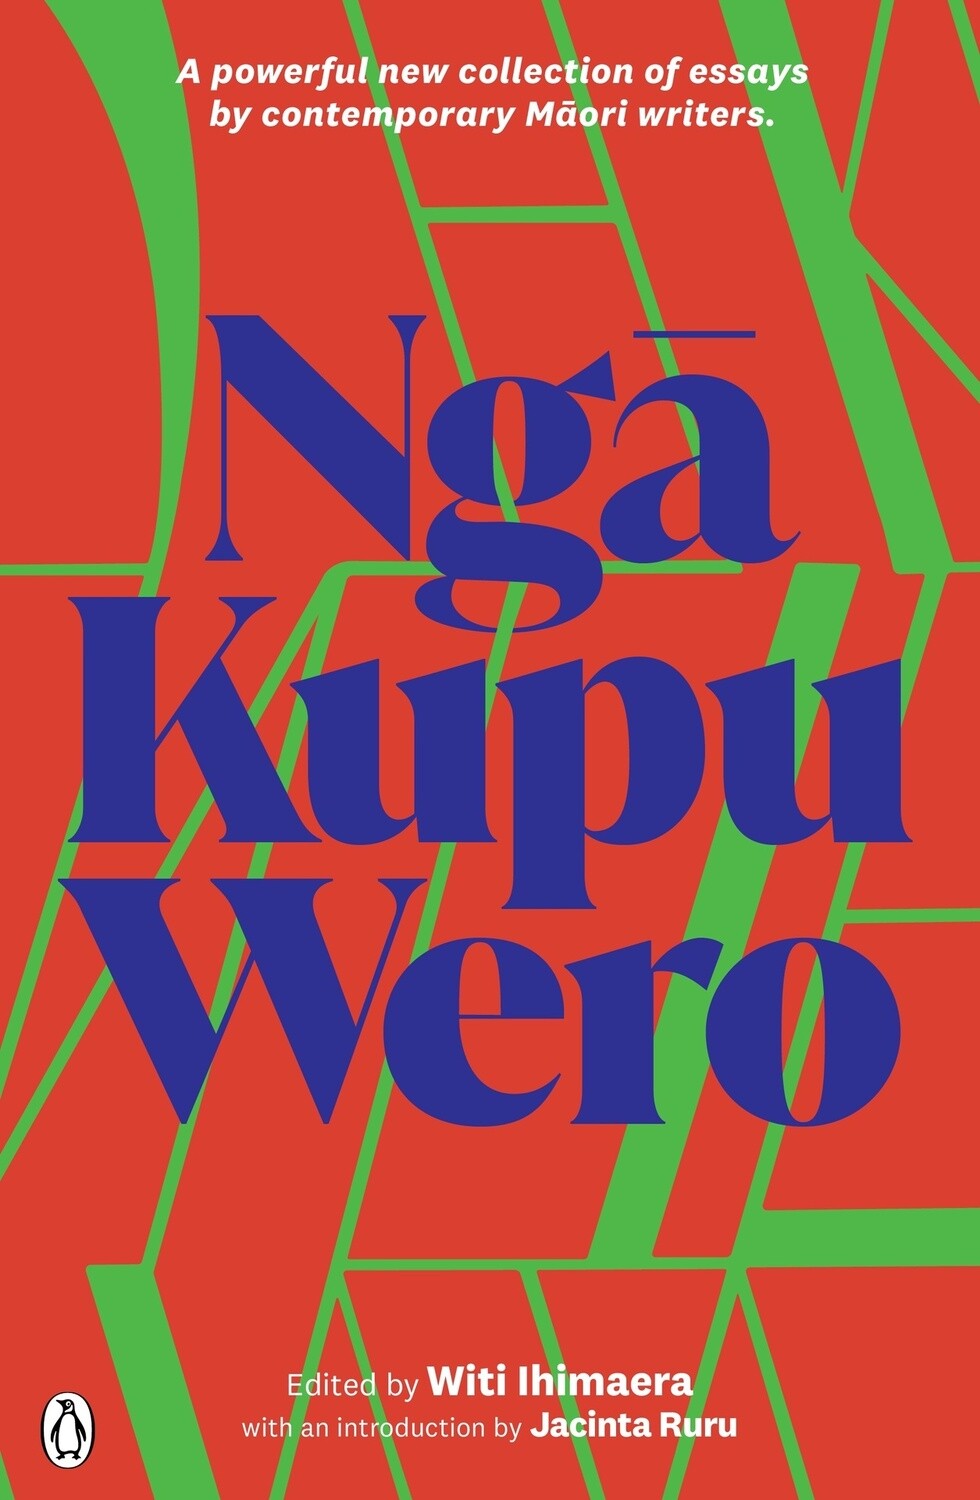 Nga Kupu Wero by Witi Ihimaera